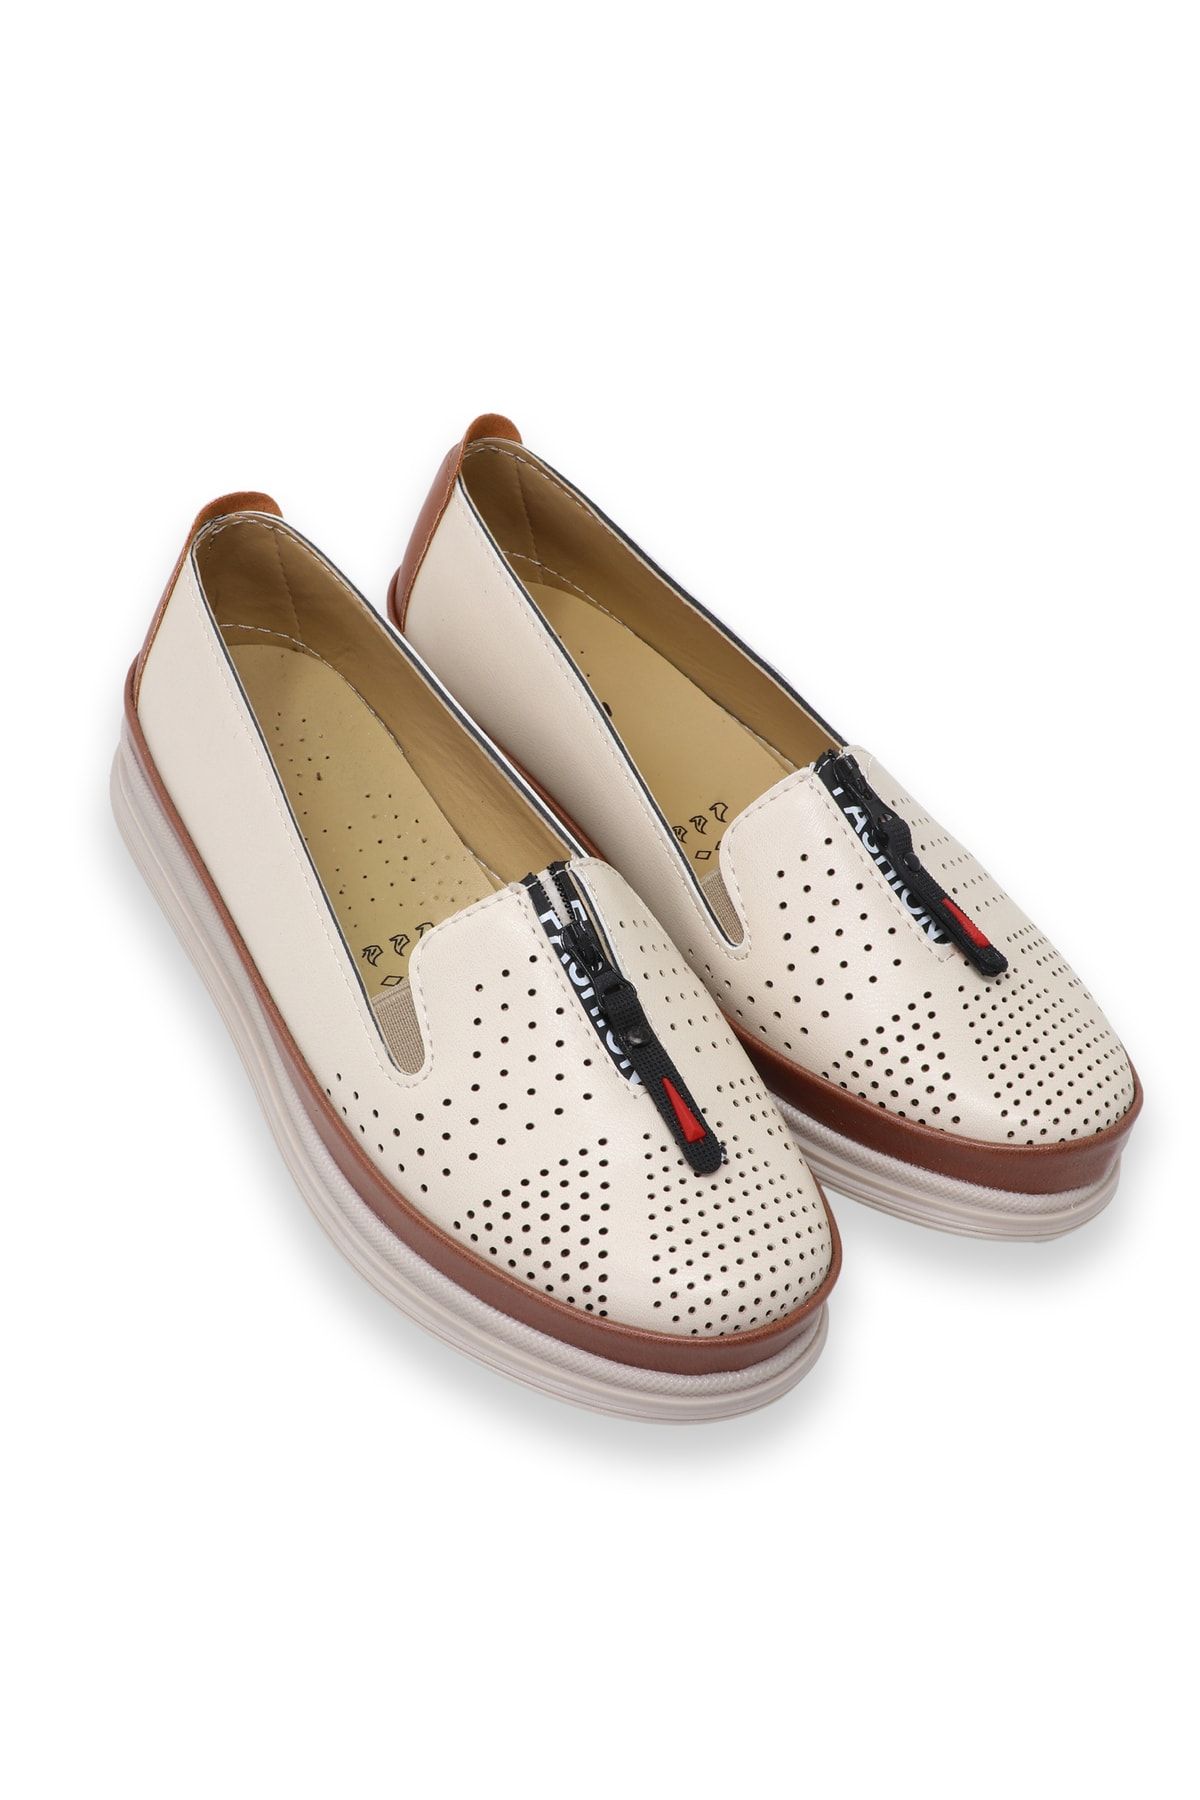 Ella Bonna Kadın Ortapedik Taban Klasik Fermuarlı Anne Ayakkabısı